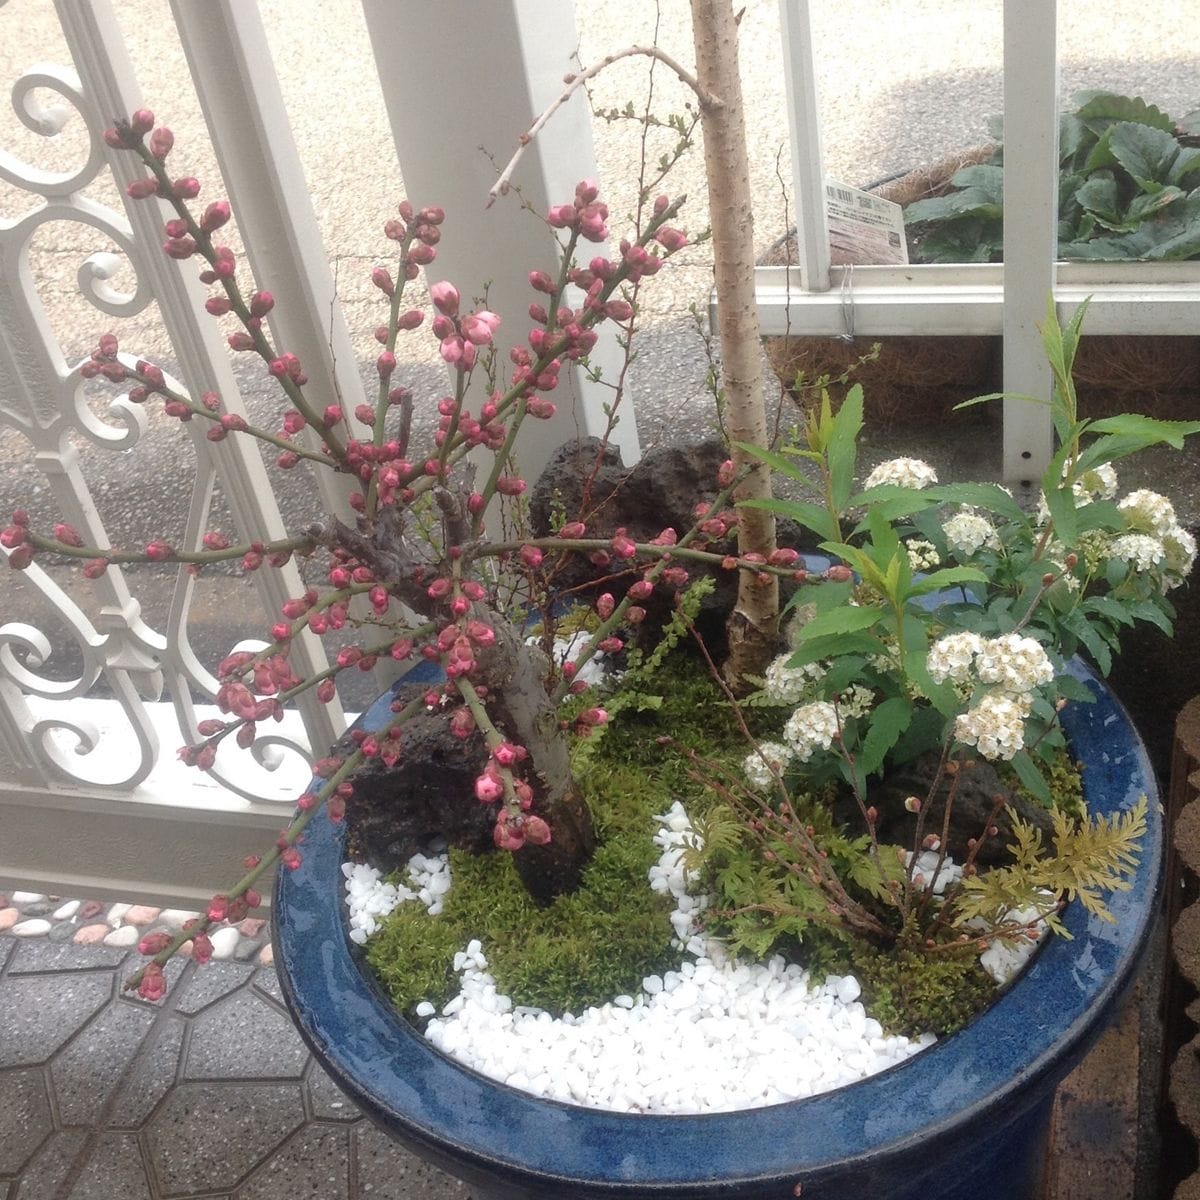 📷 2015.3.4  春の訪れ「なごり雪」…桜「仙台枝垂れ桜」の寄せ植え